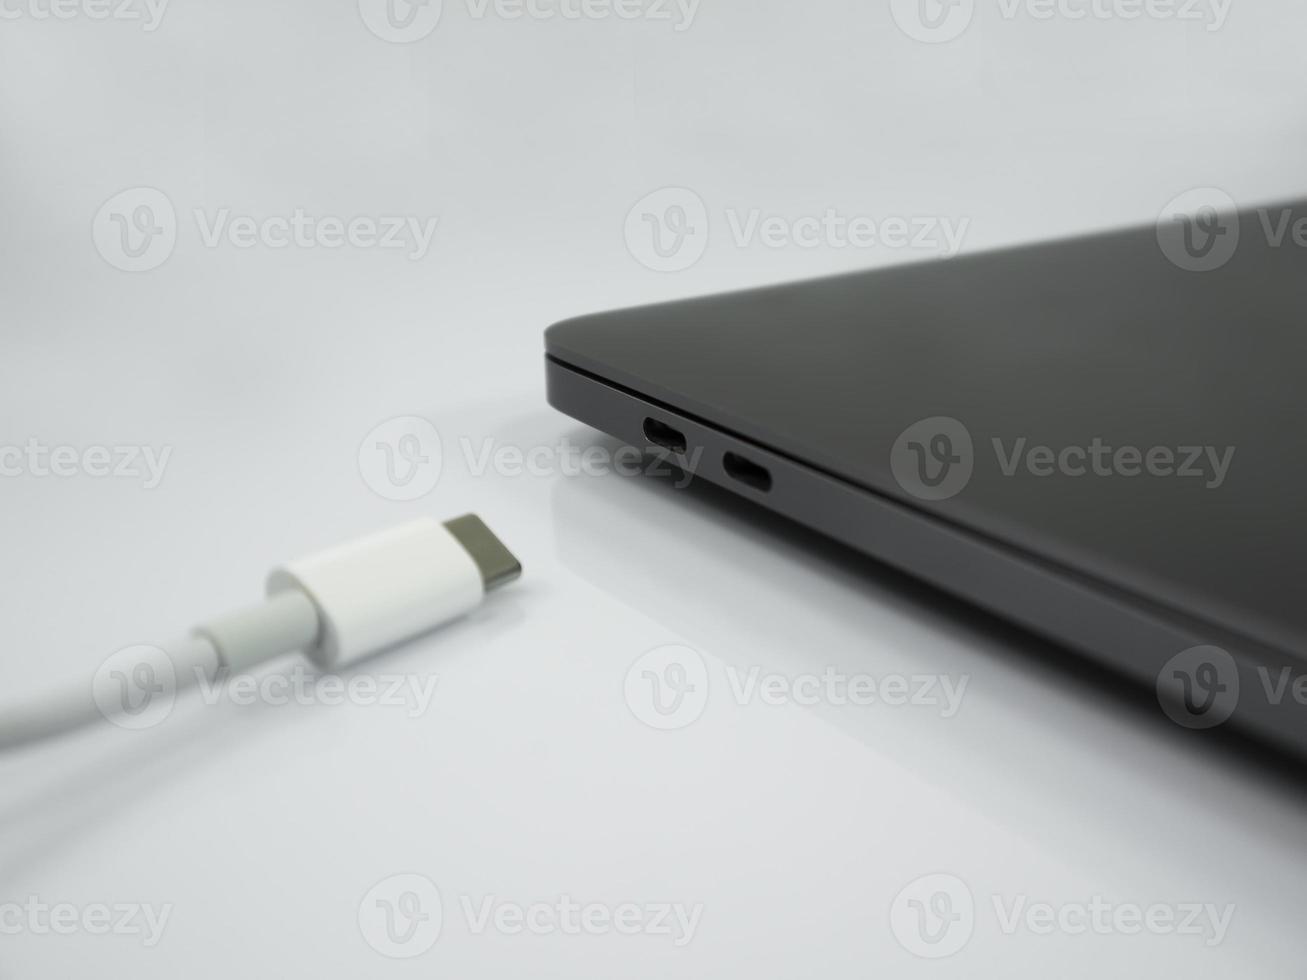 Cable tipo c y portátil sobre el fondo blanco. foto